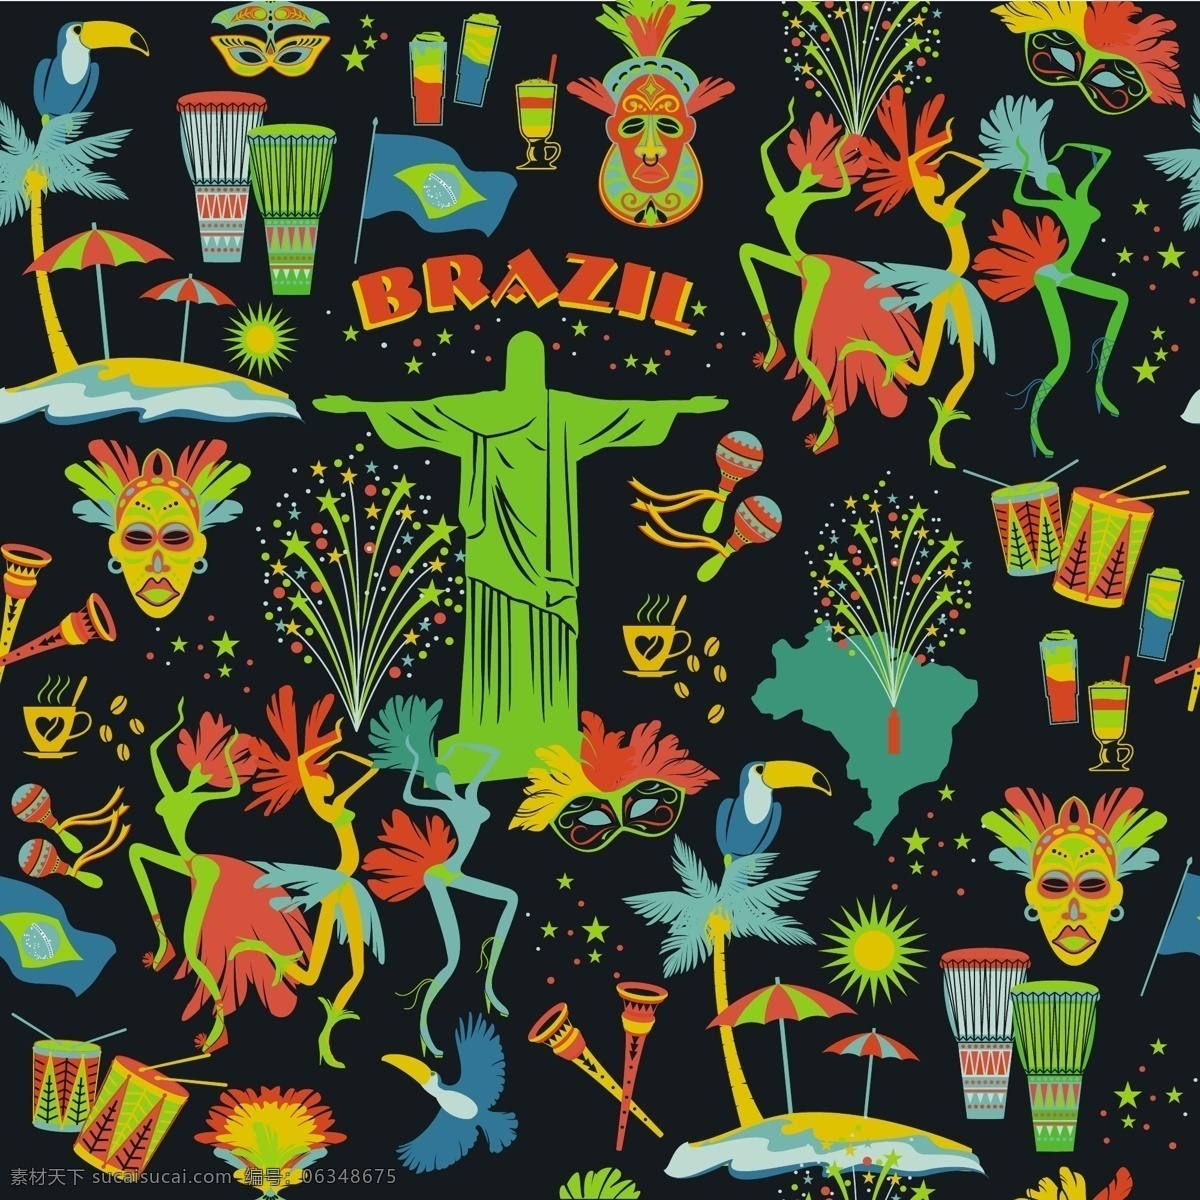 巴西元素素材 巴西元素 巴西背景 巴西 鼓 太阳 舞蹈 表演 耶稣 椰子树 面具 黑色